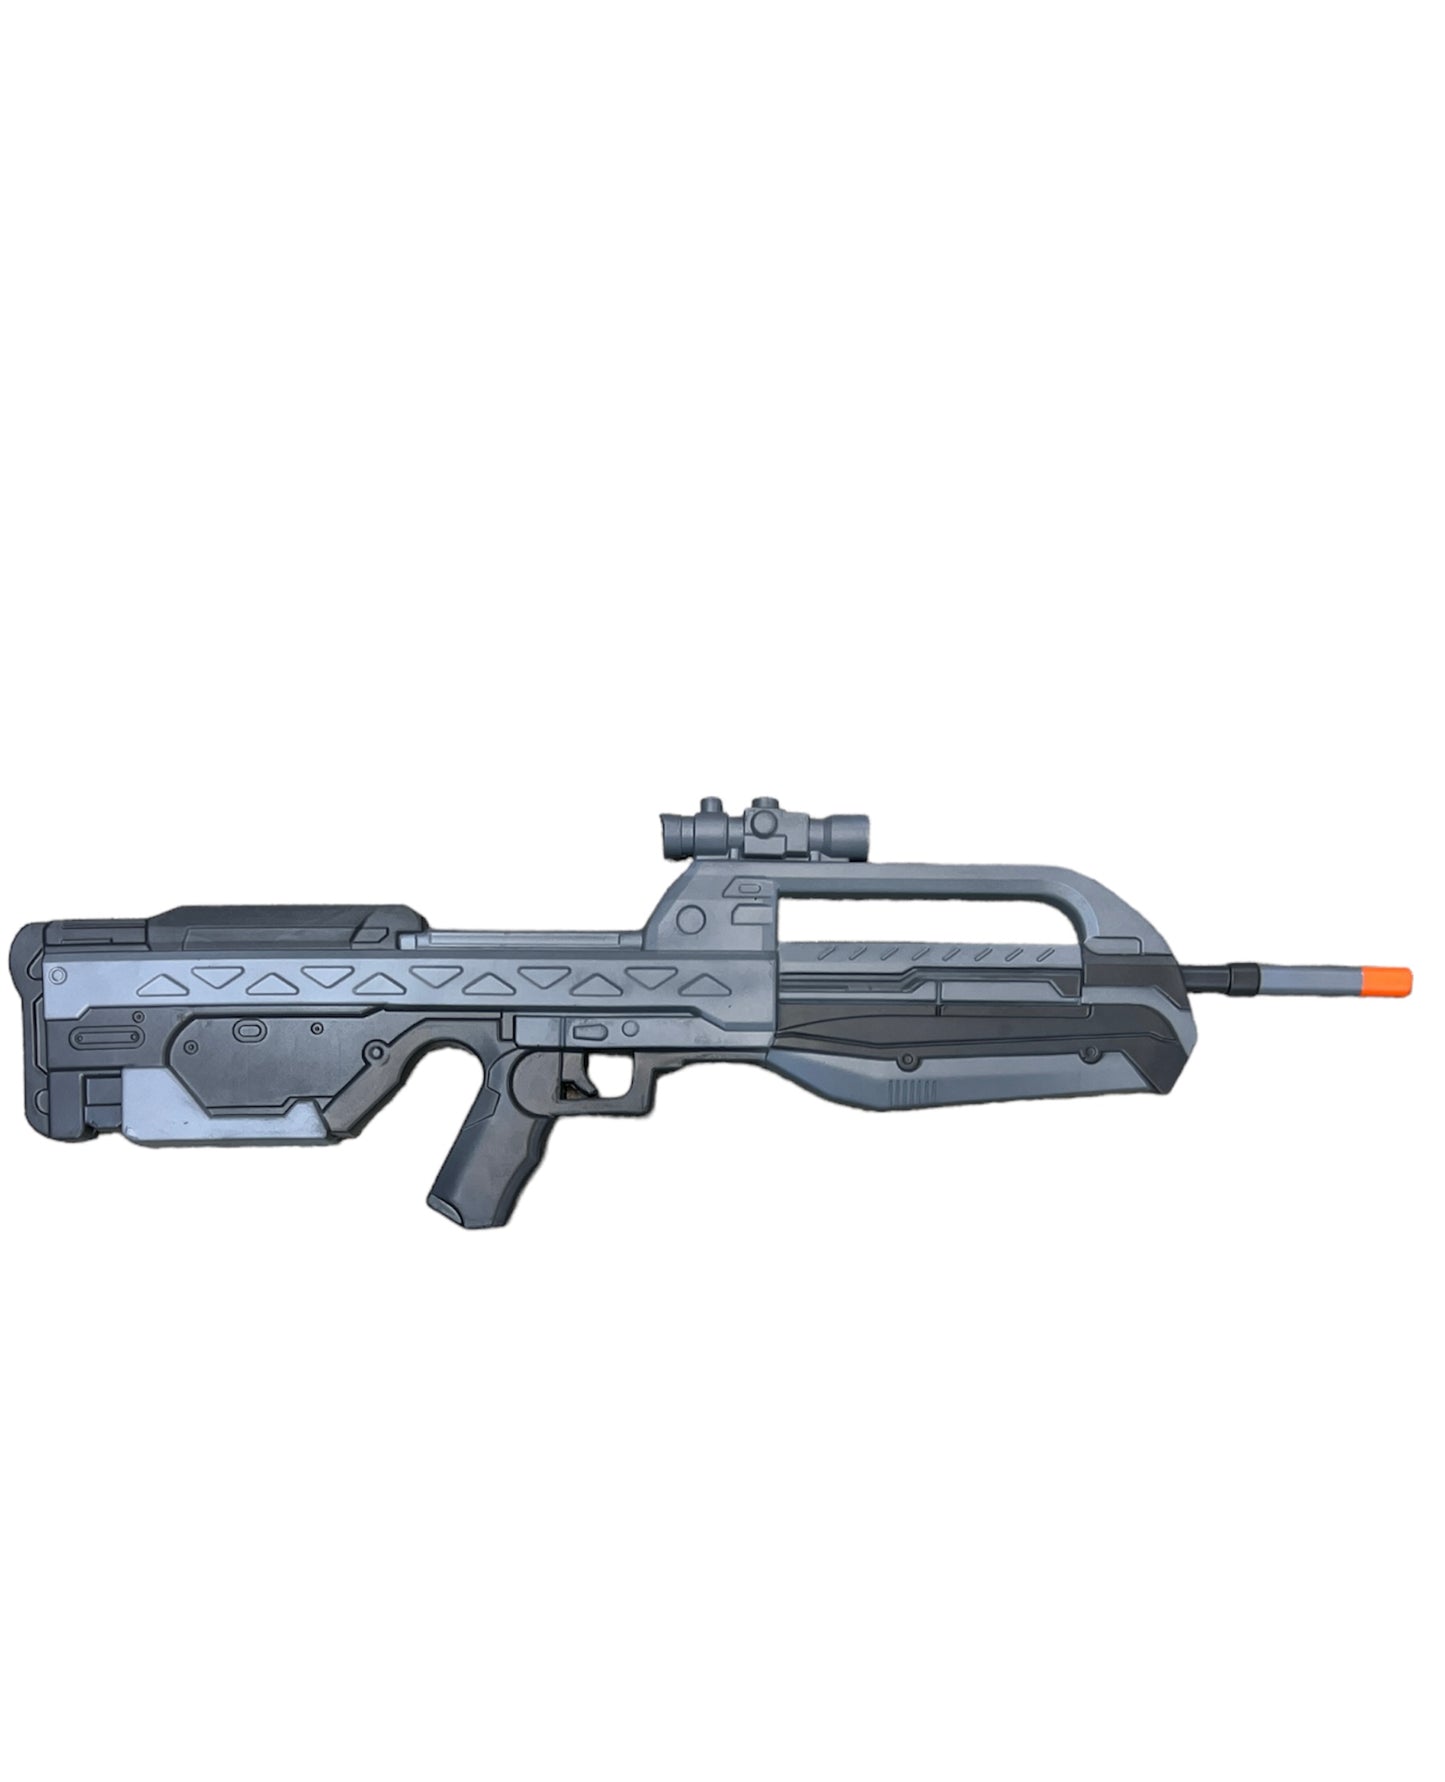 Halo Assault Rifle Replicas